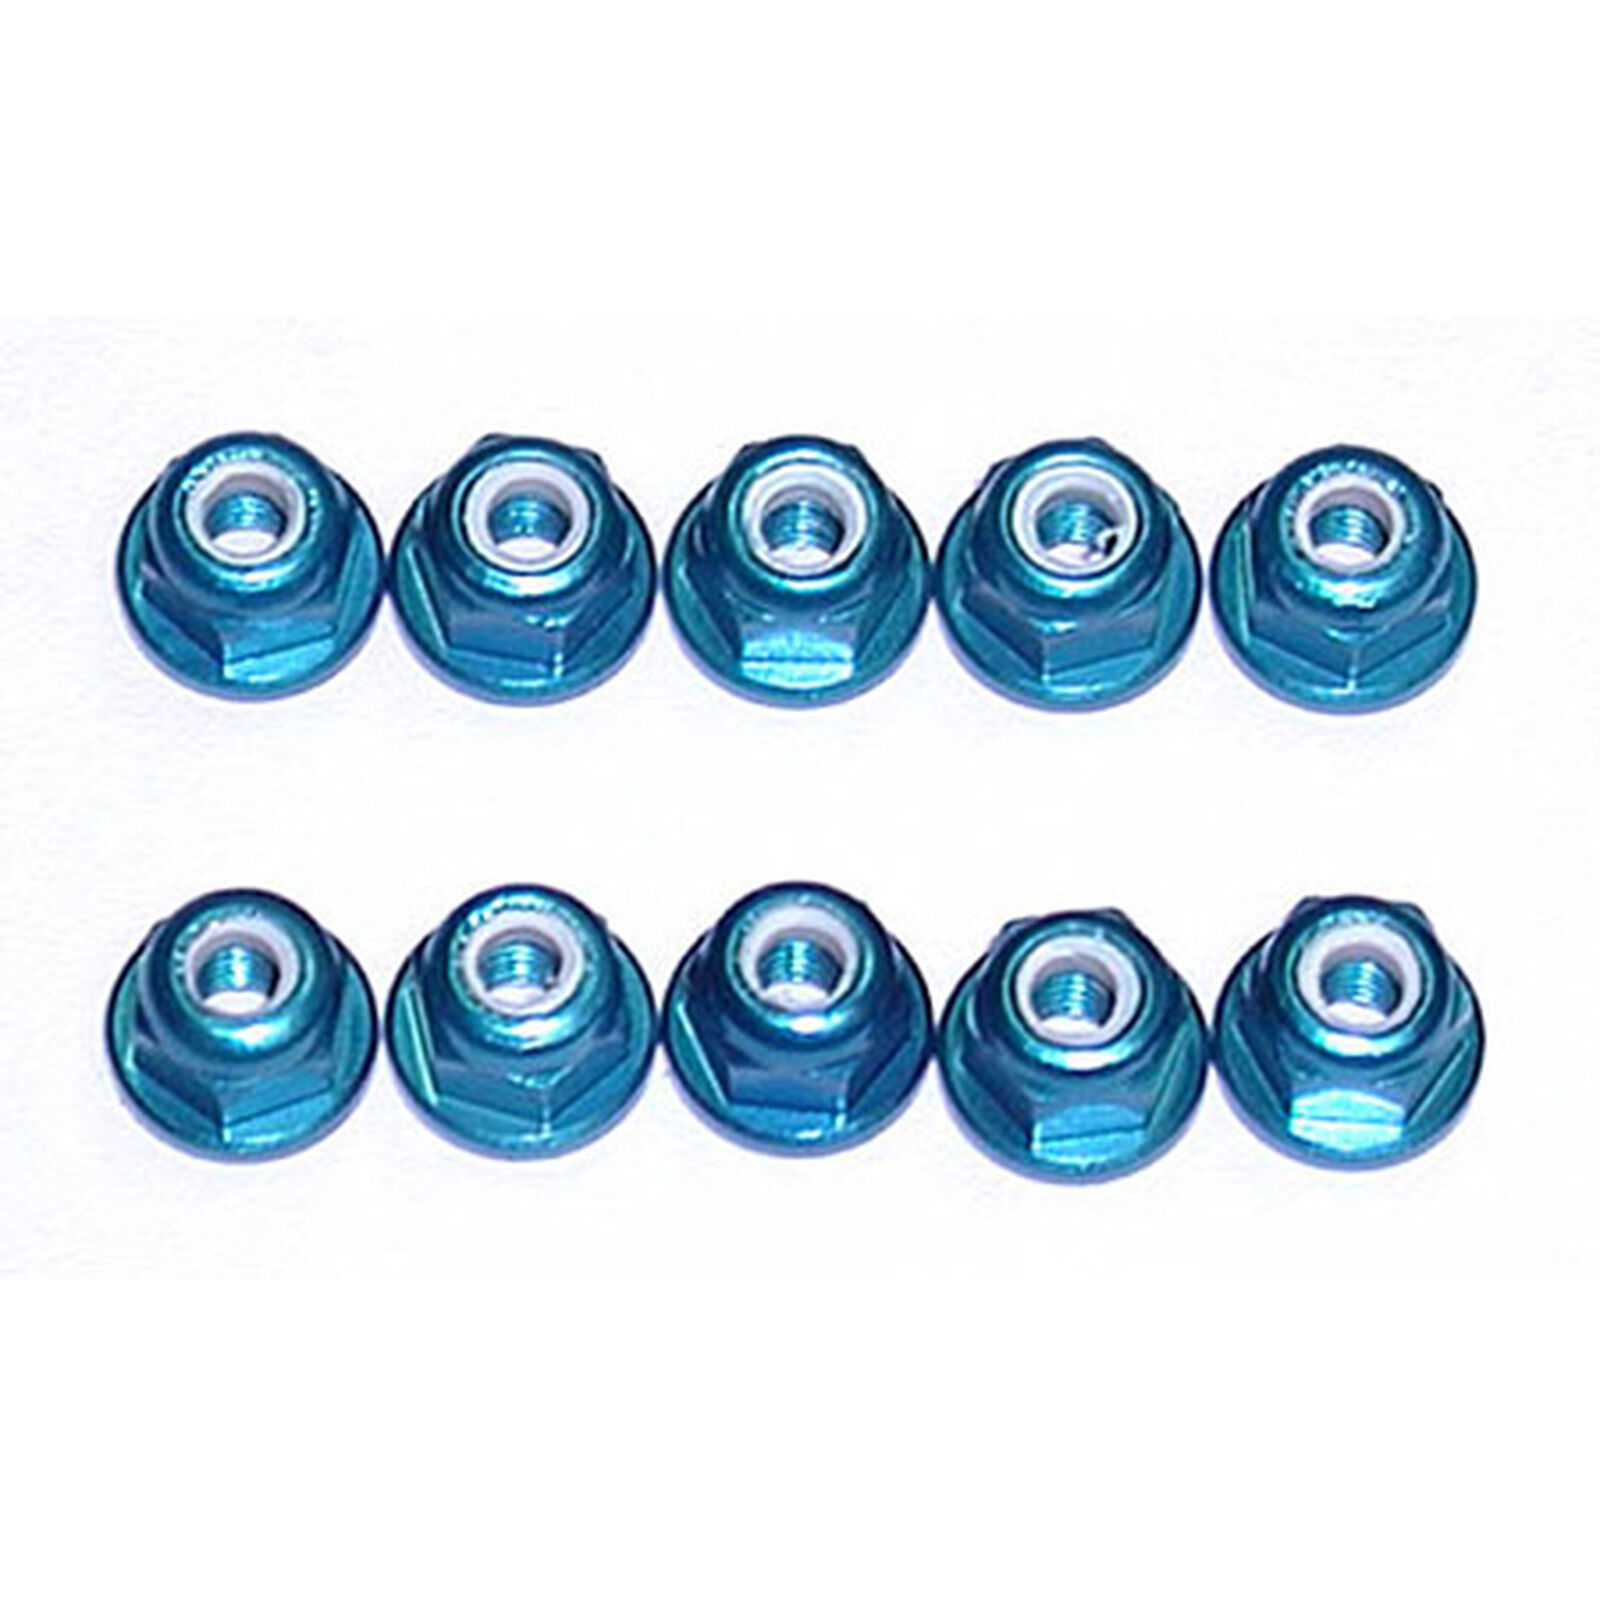 3mm Aluminum Lock Nuts, Blue (10): MGT